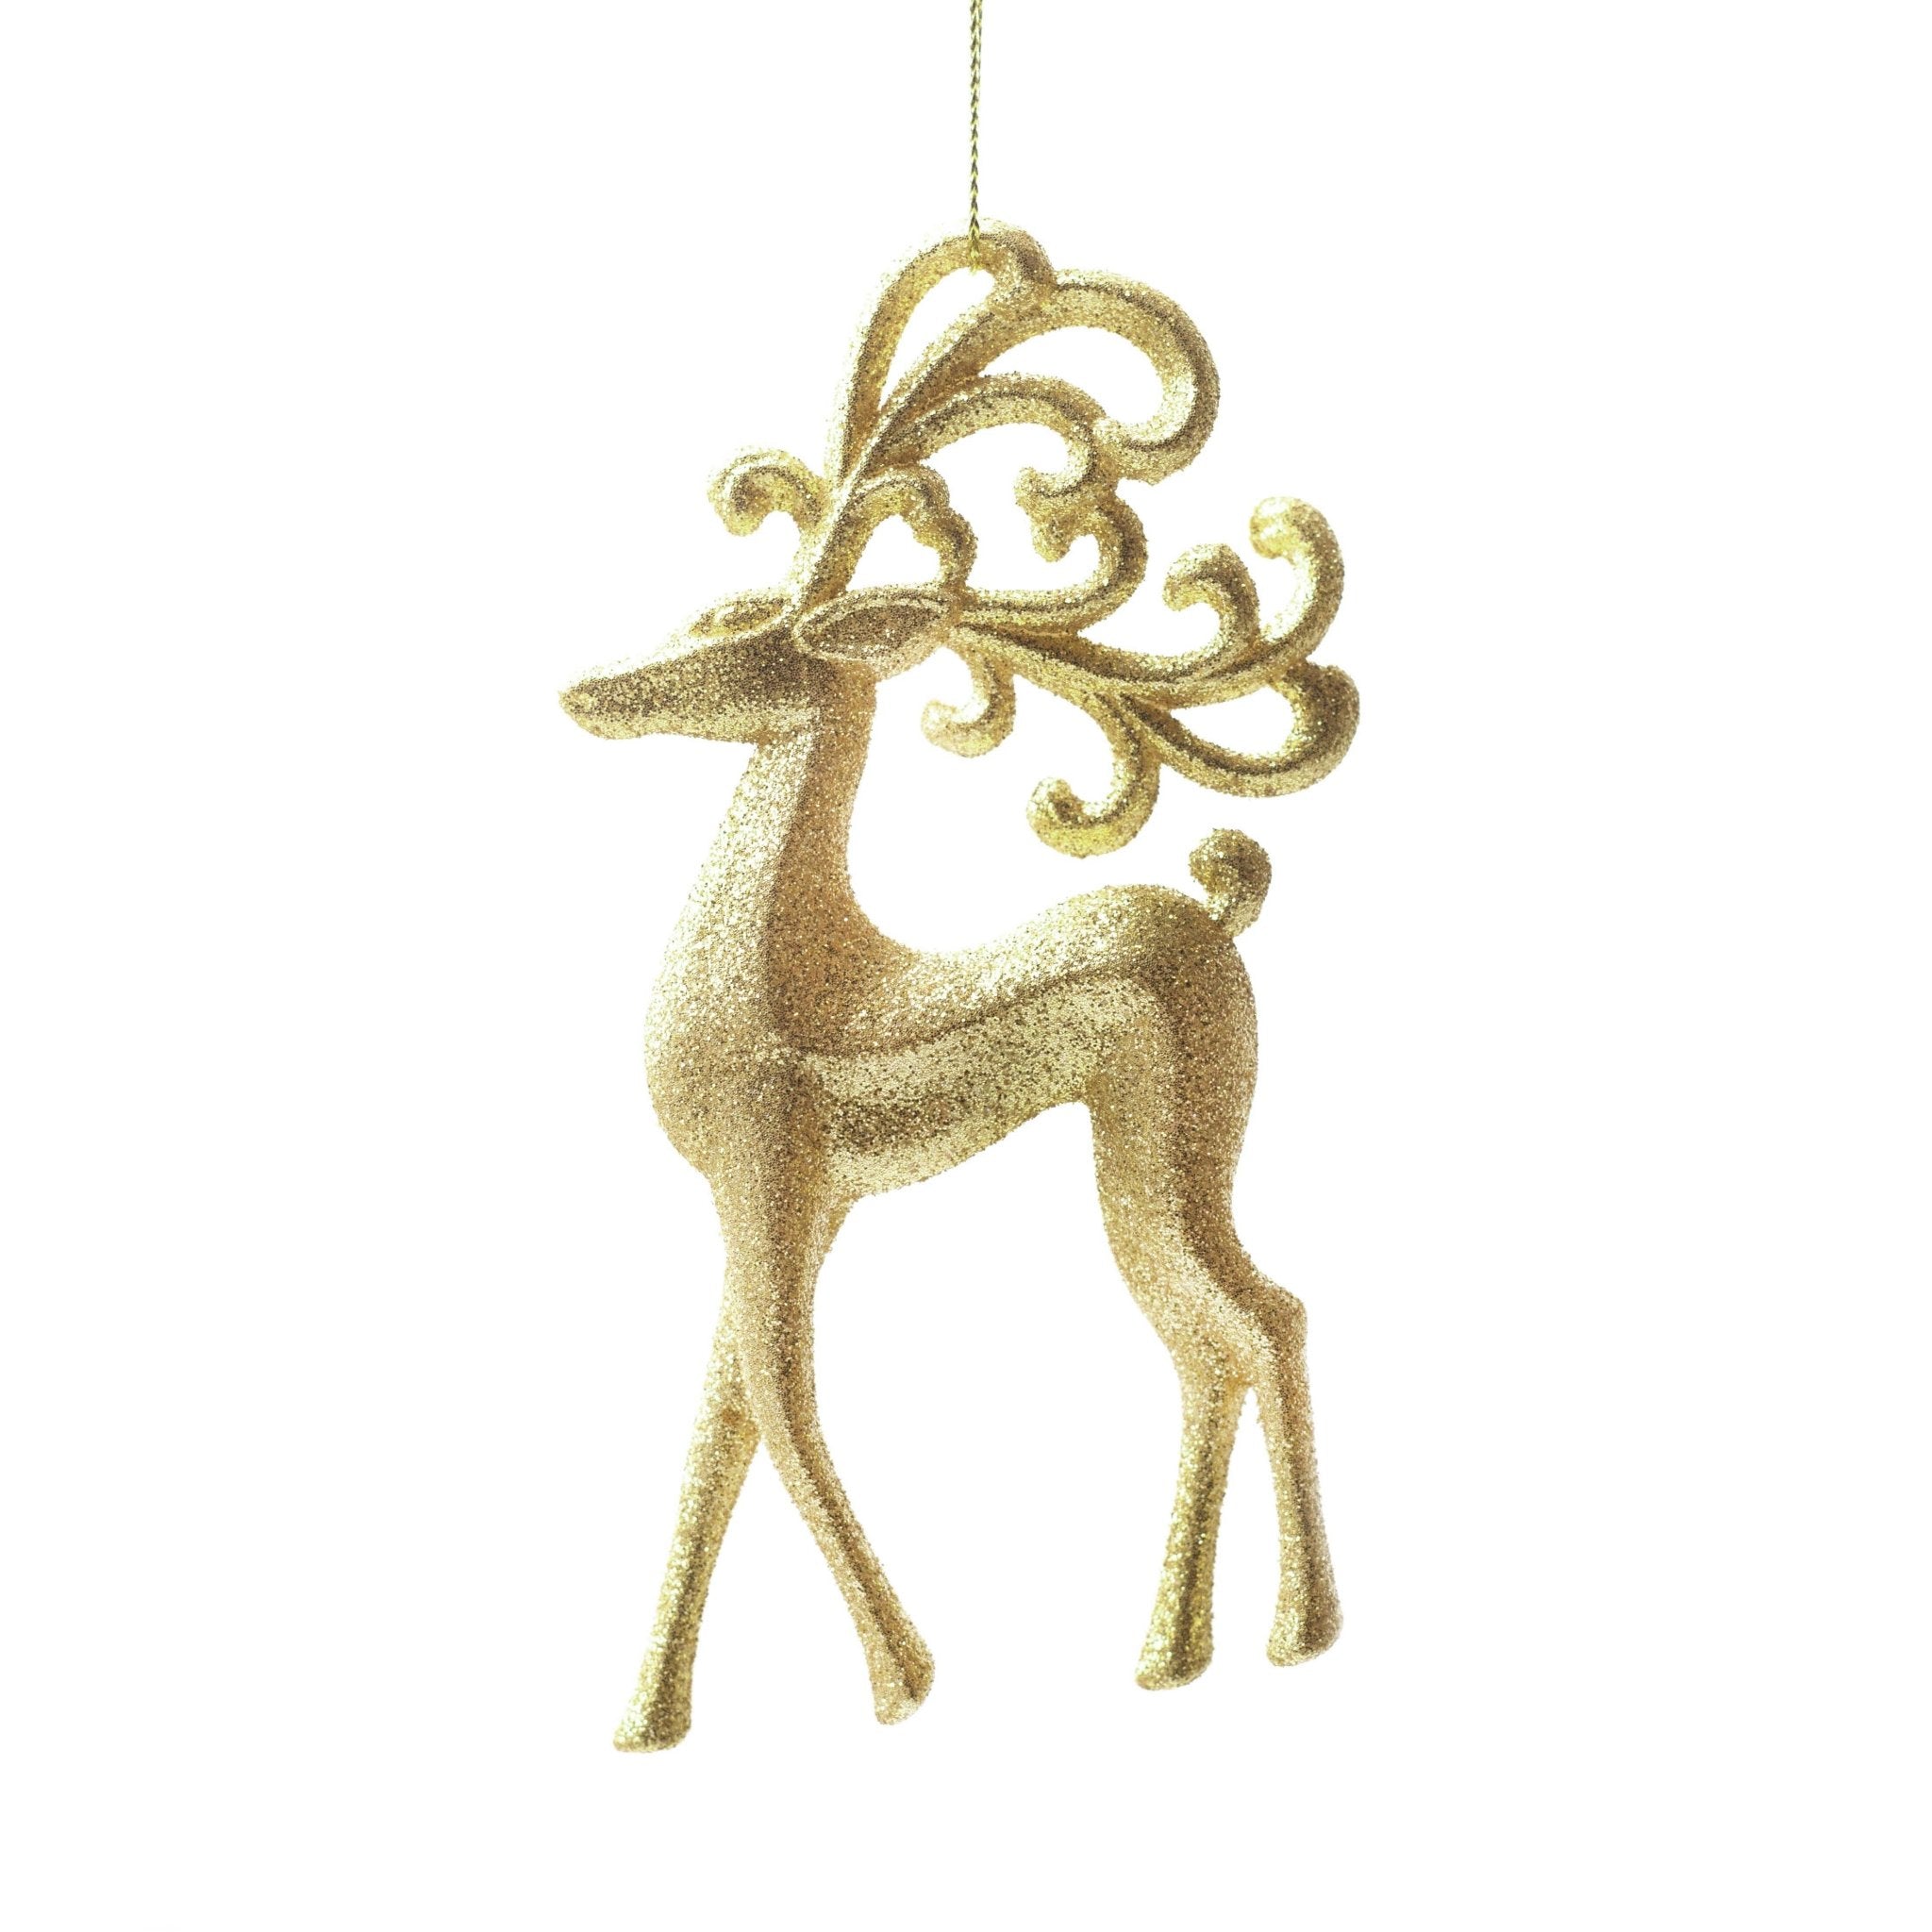 14cm Gold Reindeer Shatterproof Ornaments 01001 - MODA FLORA Santa's Workshop